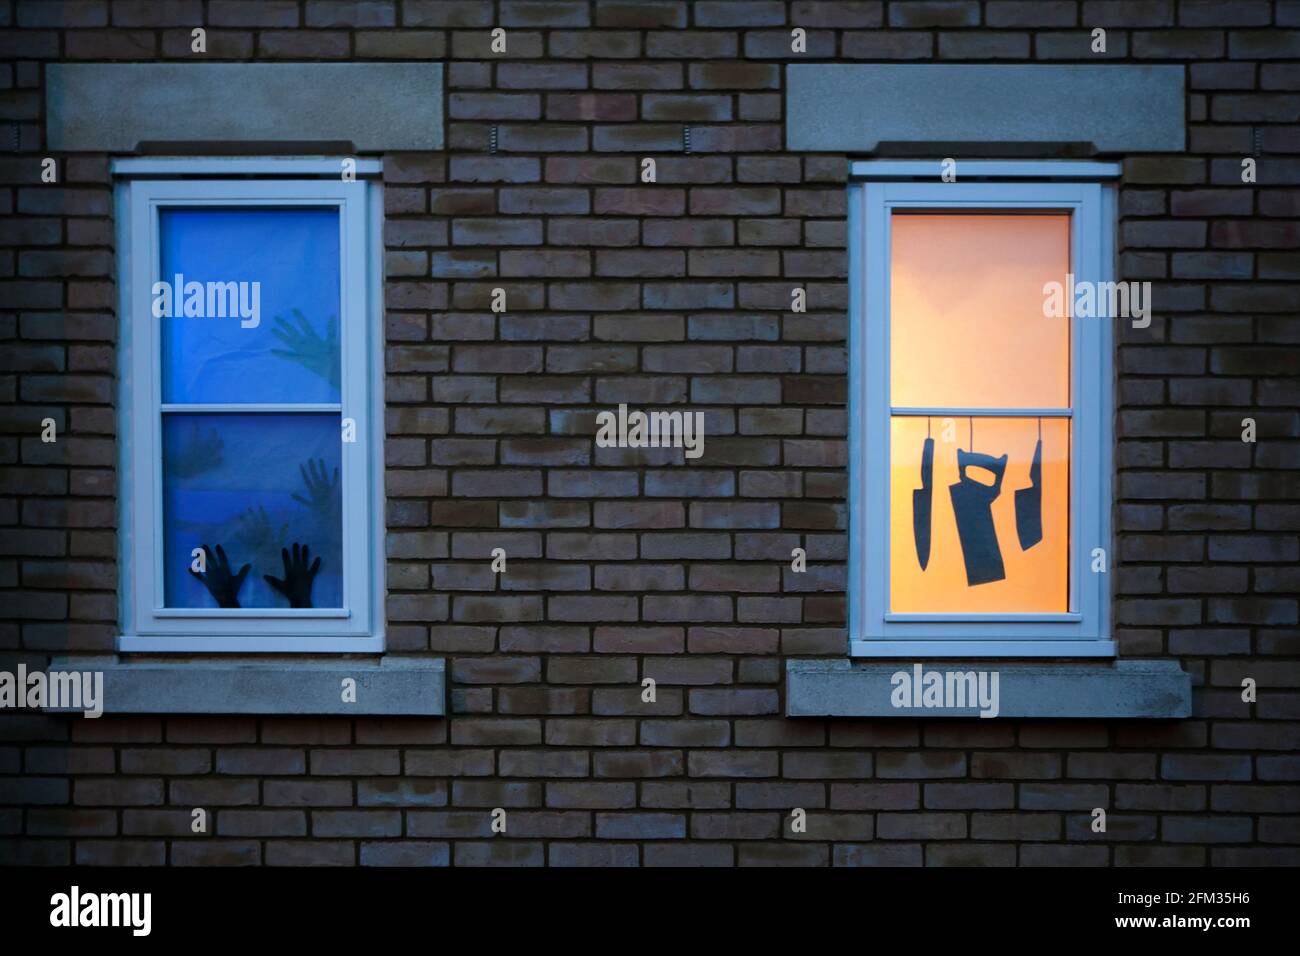 Due silhouette di finestra a tema Halloween / casa infestata: Coltelli e una sega appesi in una finestra illuminata; mani che cercano di fuggire da un'altra. Foto Stock